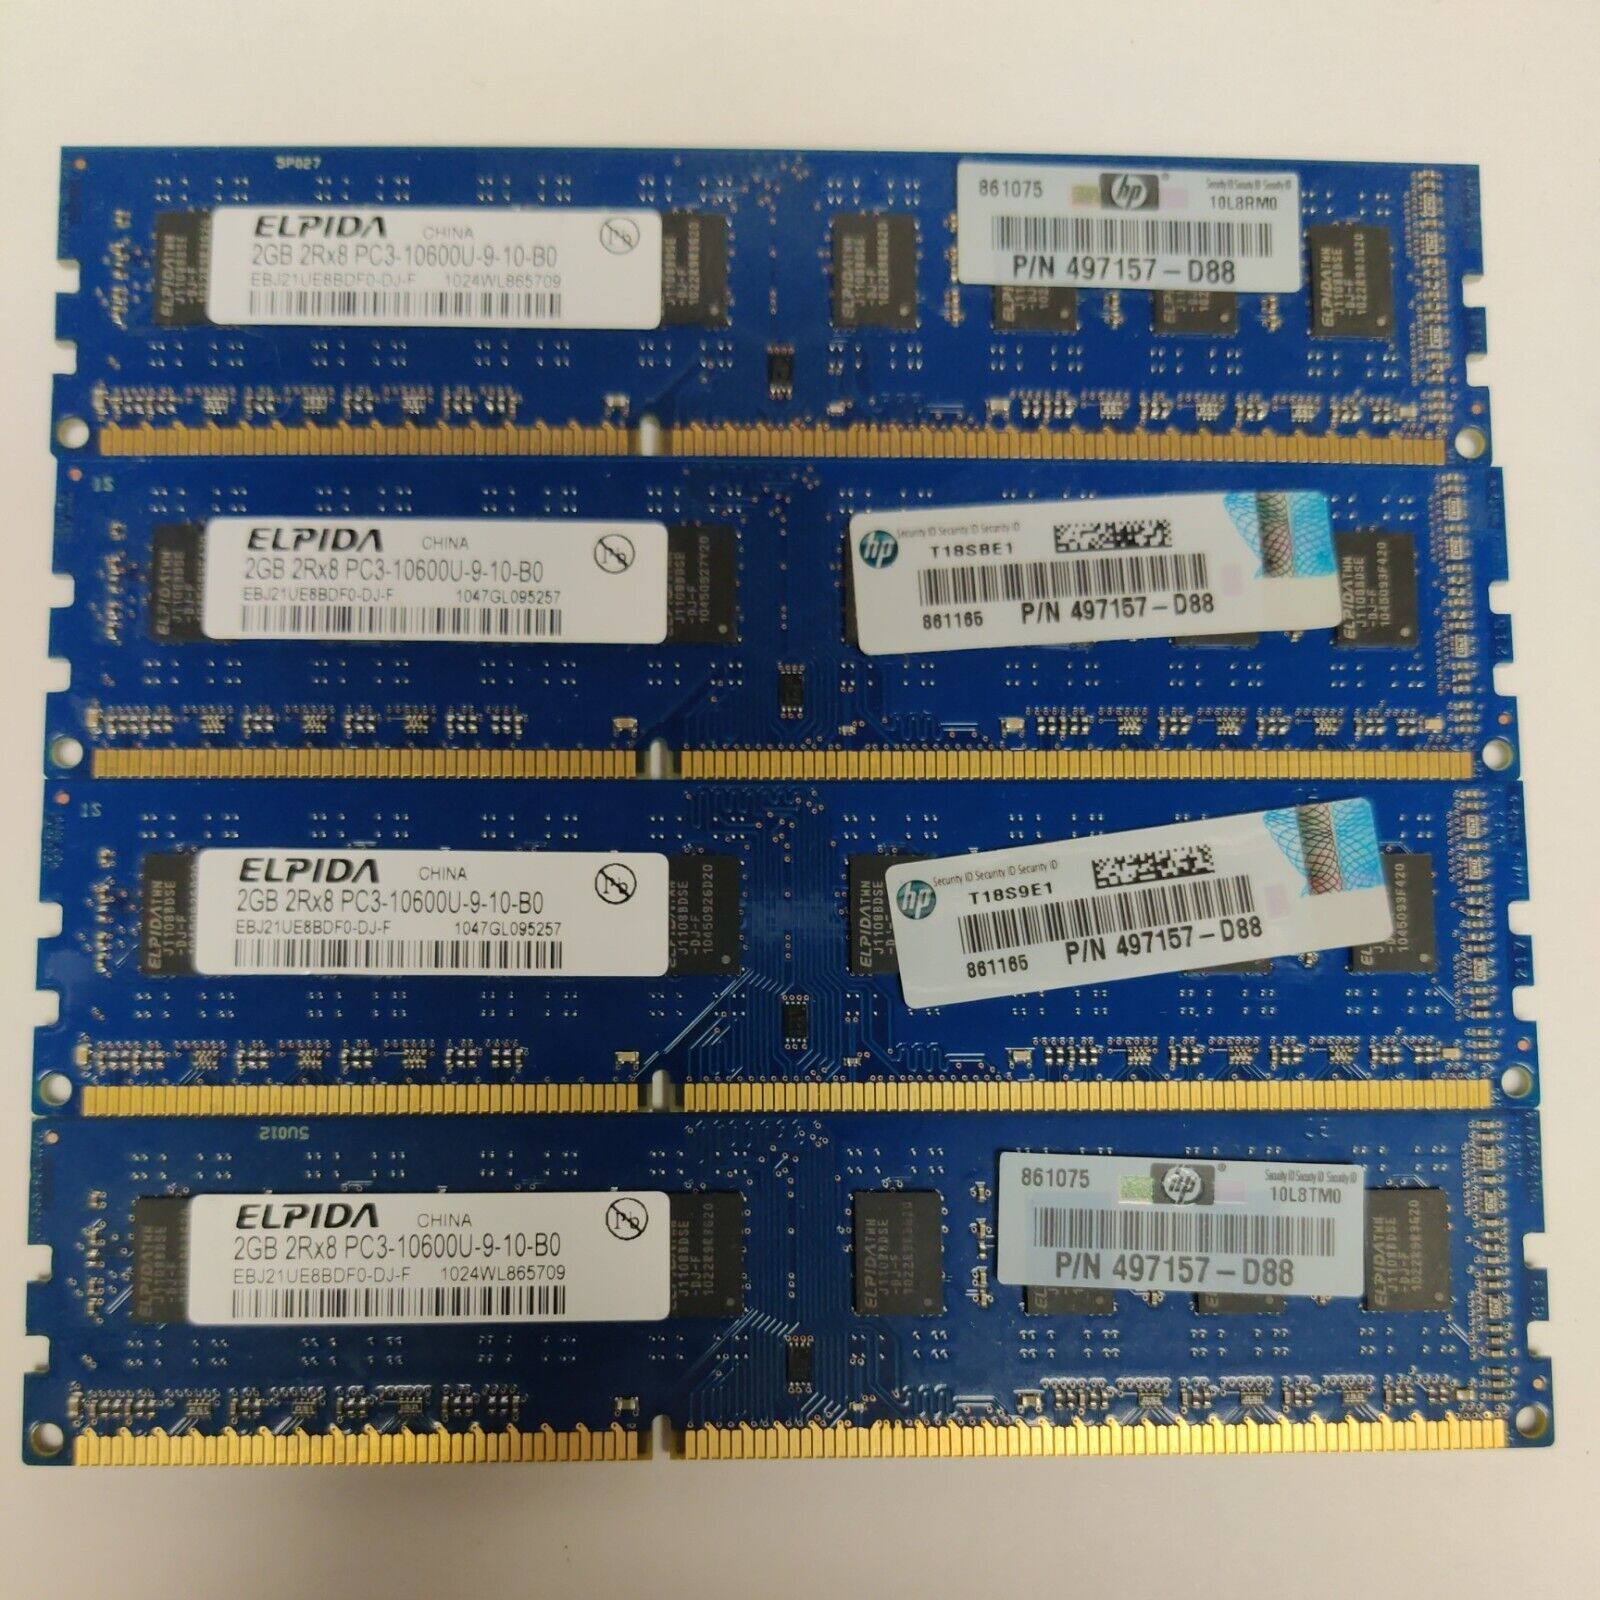 Lot of 4 sticks Elpida 2GB 2Rx8 PC3-10600U Desktop Memory DIMM SDRAM